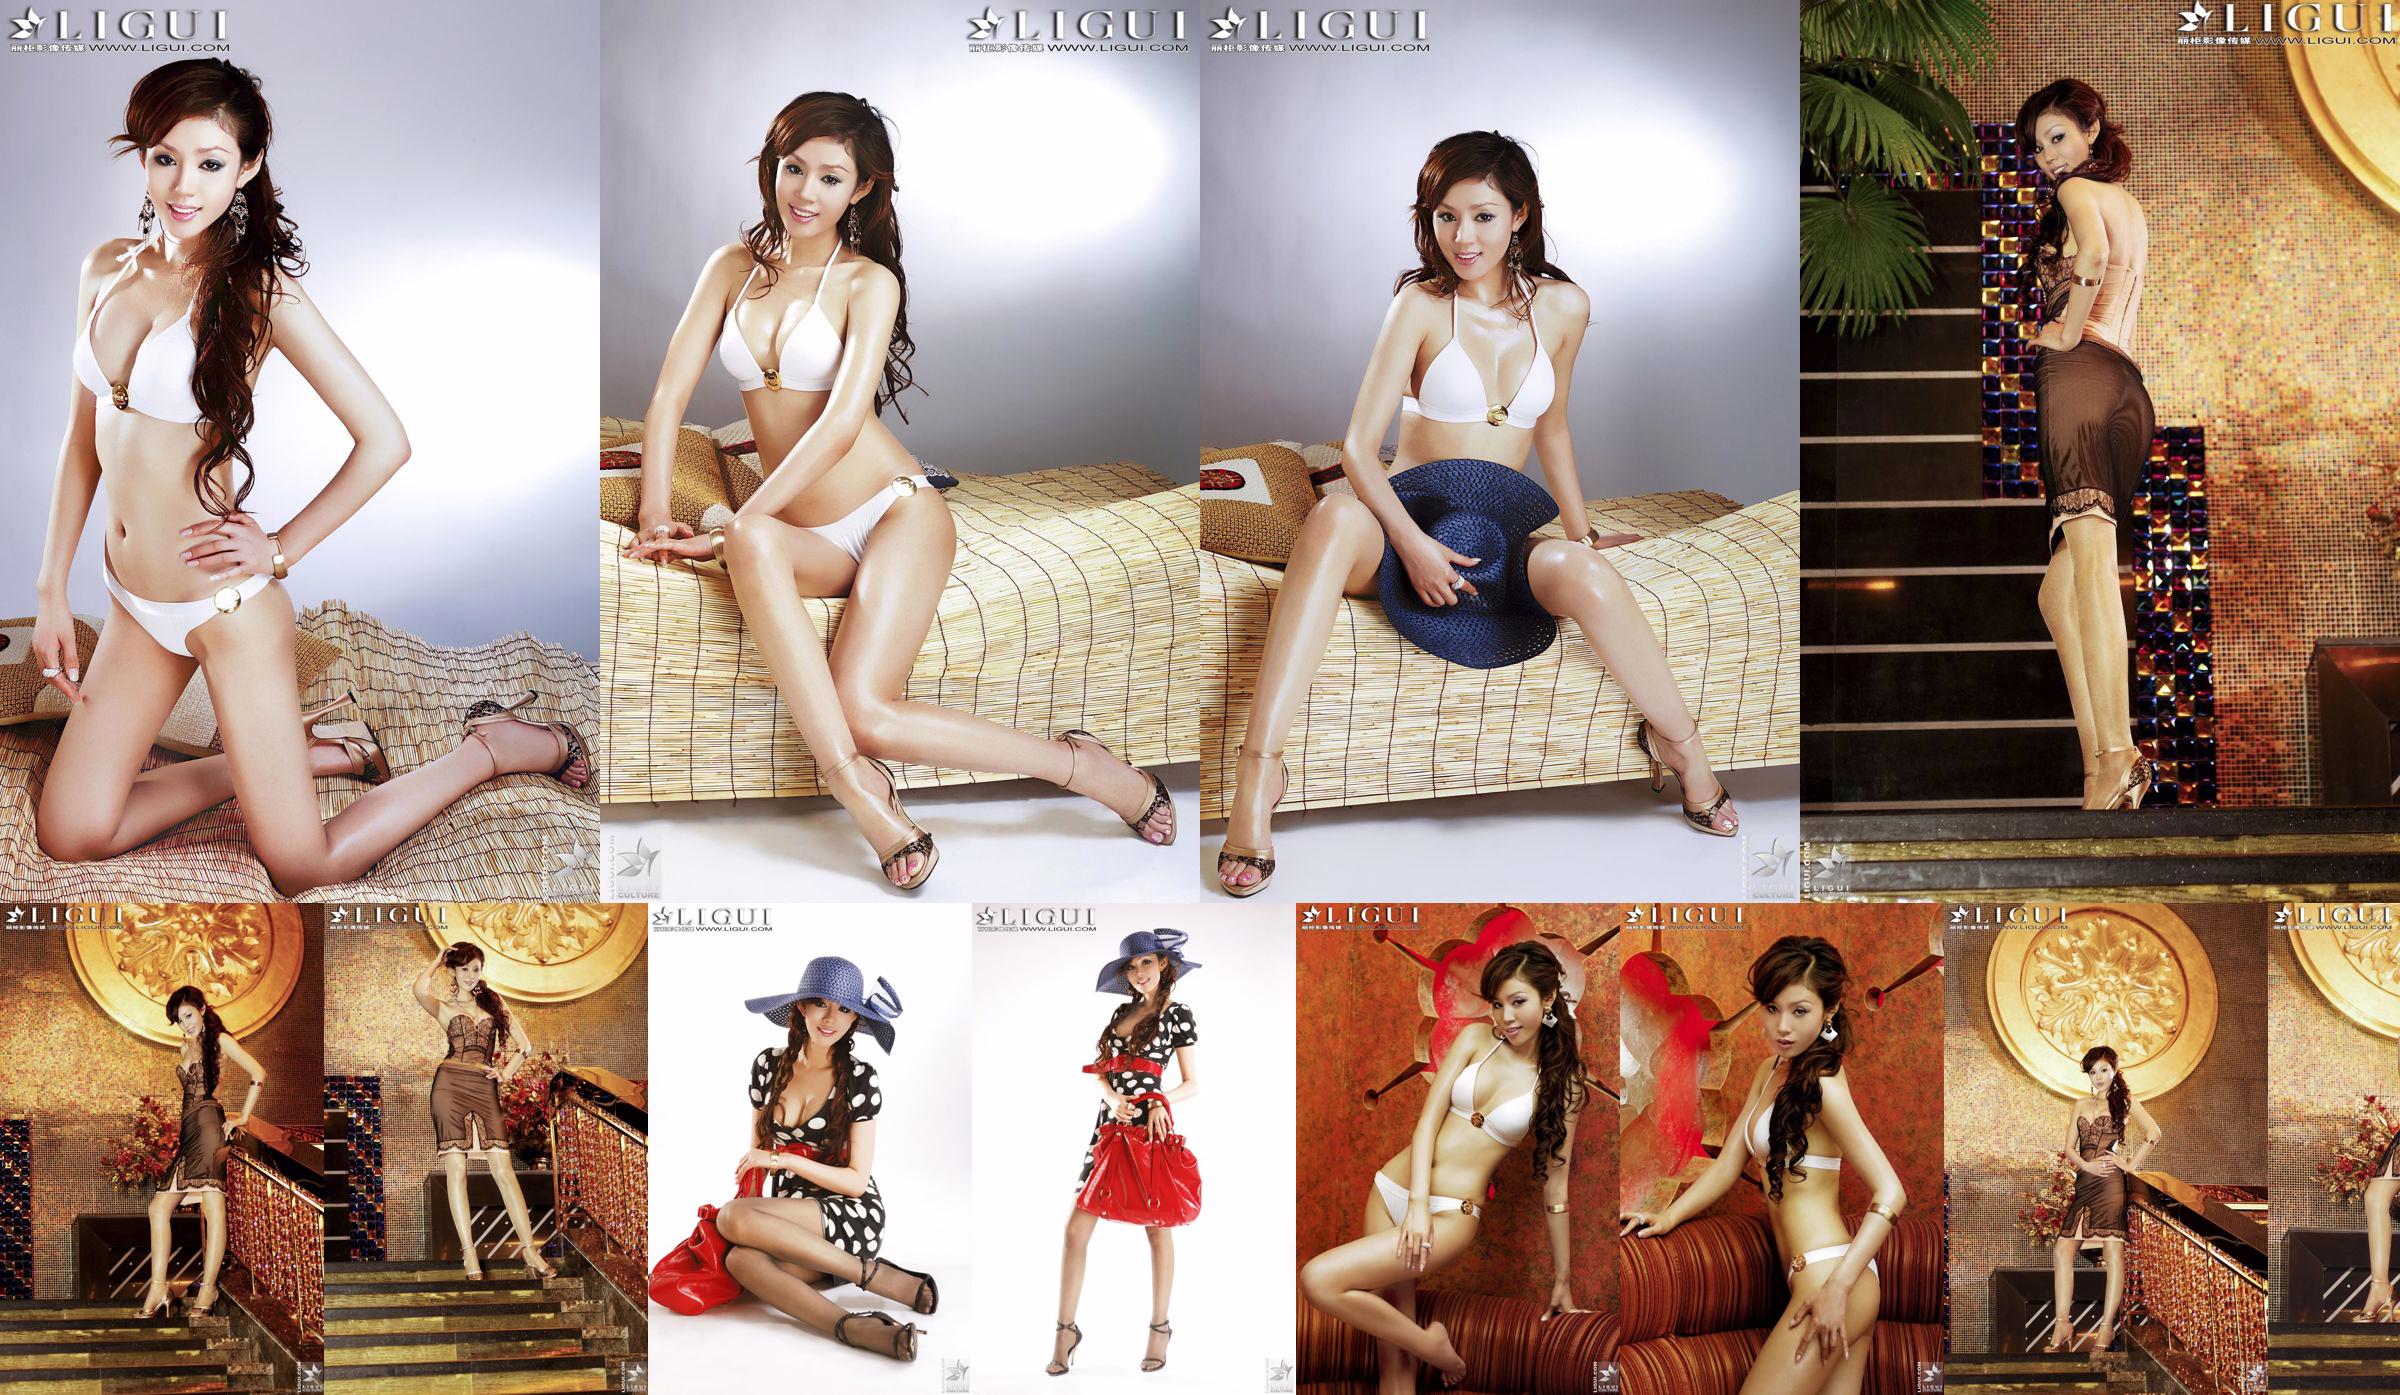 [丽 柜 LiGui] Model Yao Jinjins "Bikini + Kleid" Schöne Beine und seidige Füße Foto Bild No.d86b2e Seite 1